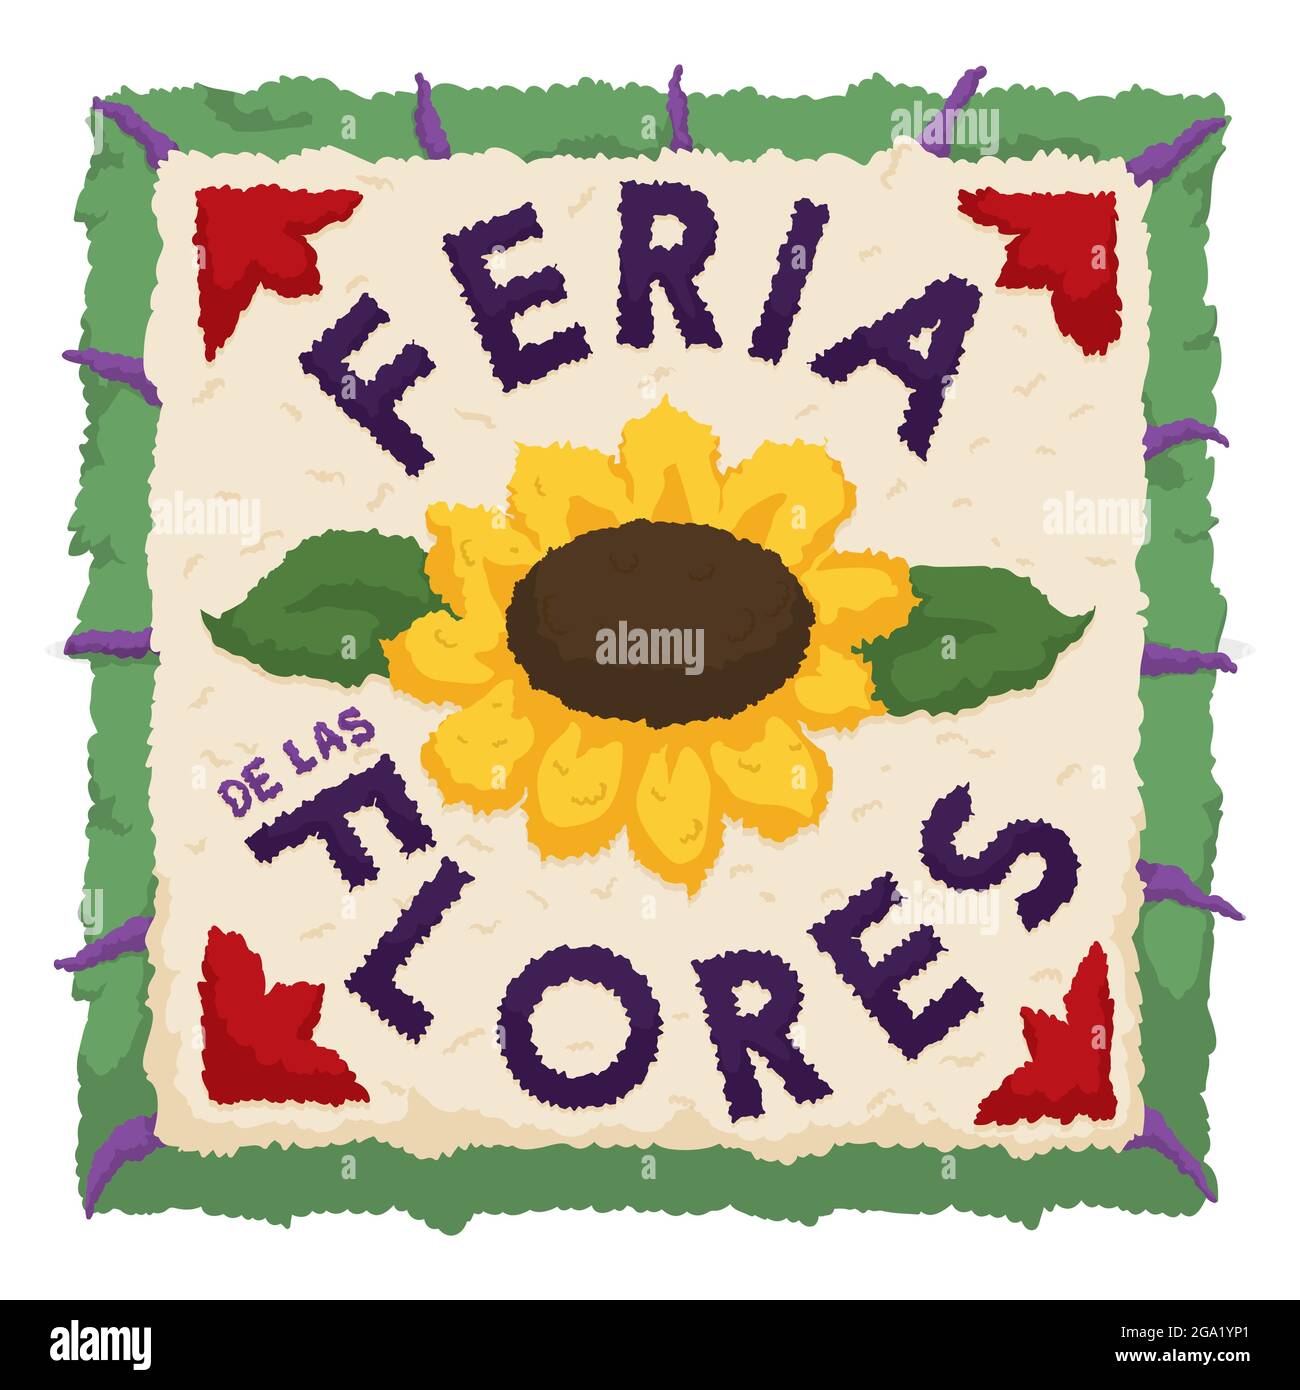 Gedenksilleta in quadratischer Form mit Blumen, Blättern und Text in spanischer Sprache für das Fest der Blumen - oder 'Feria de las Flores'. Stock Vektor